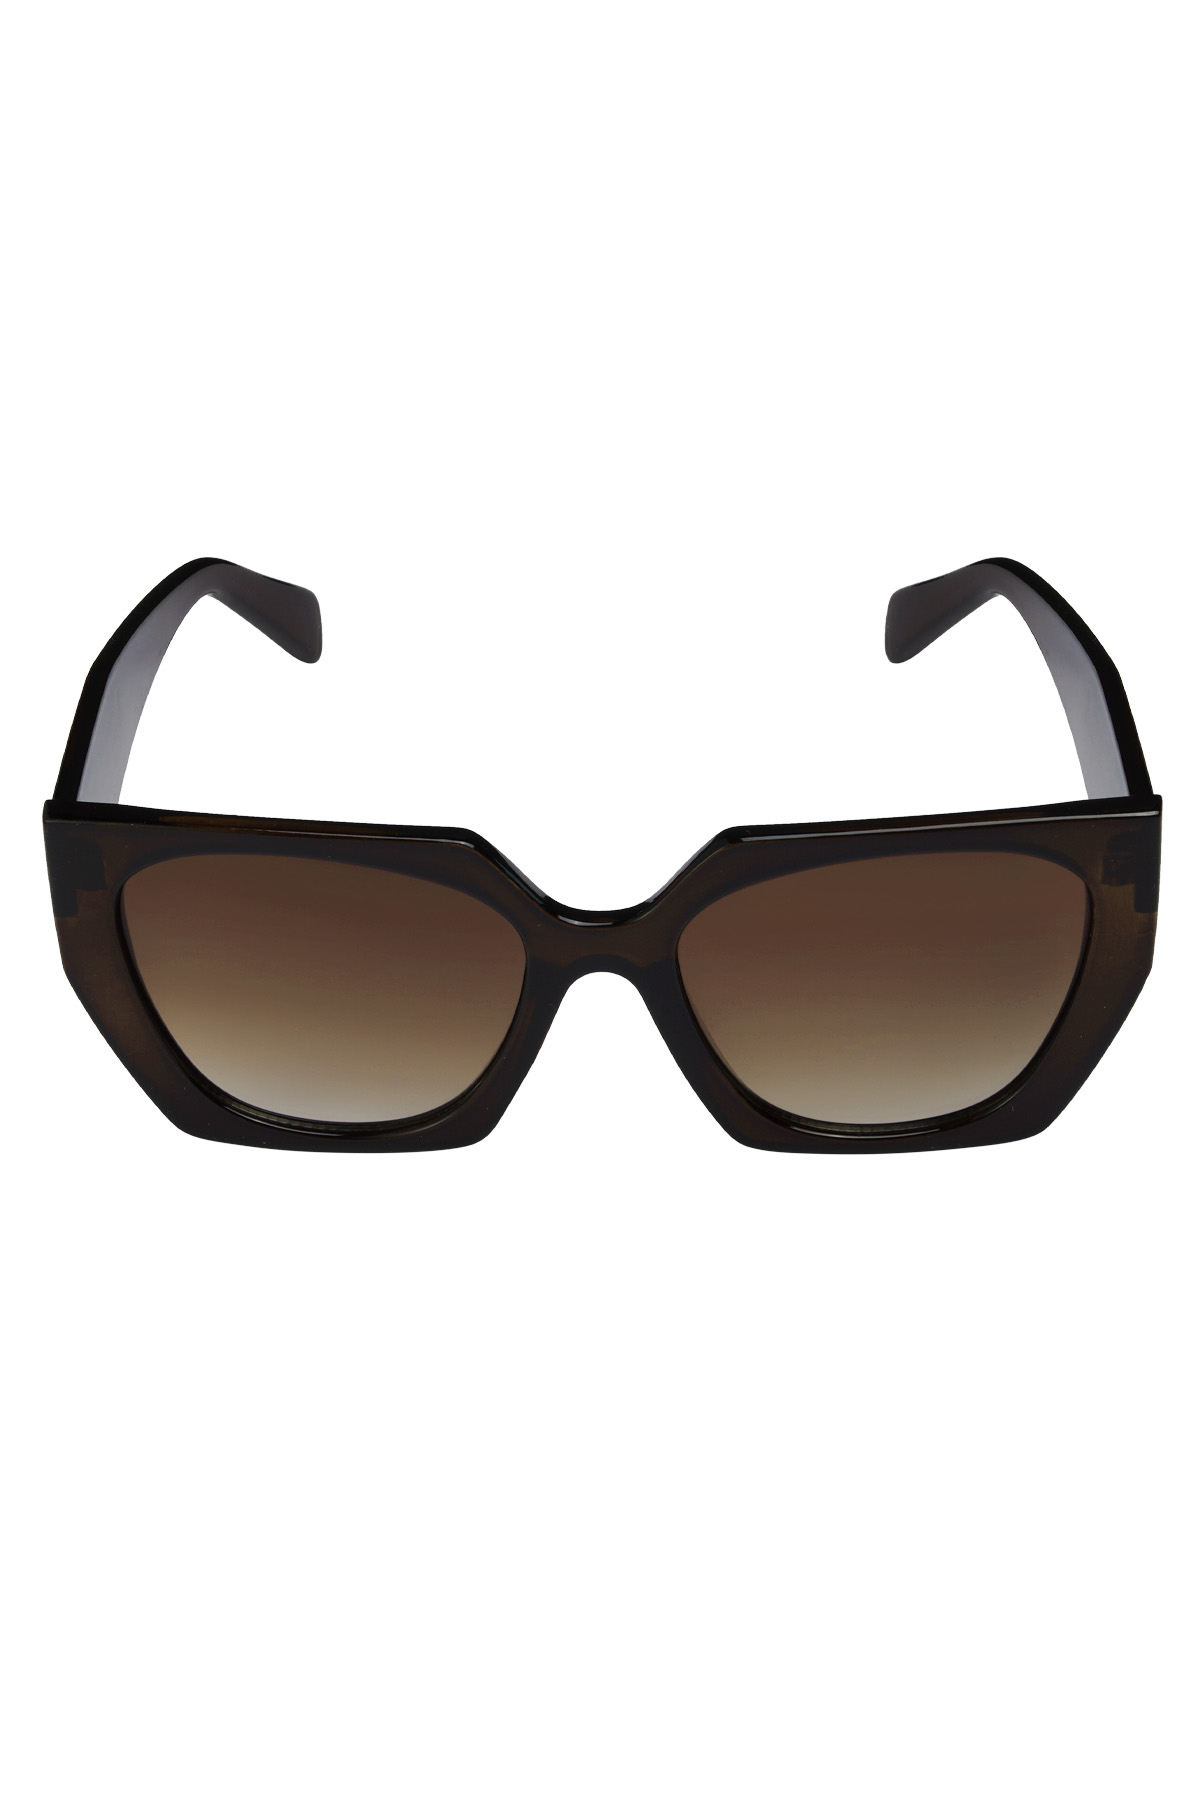 Trendy angular sunglasses - dark brown